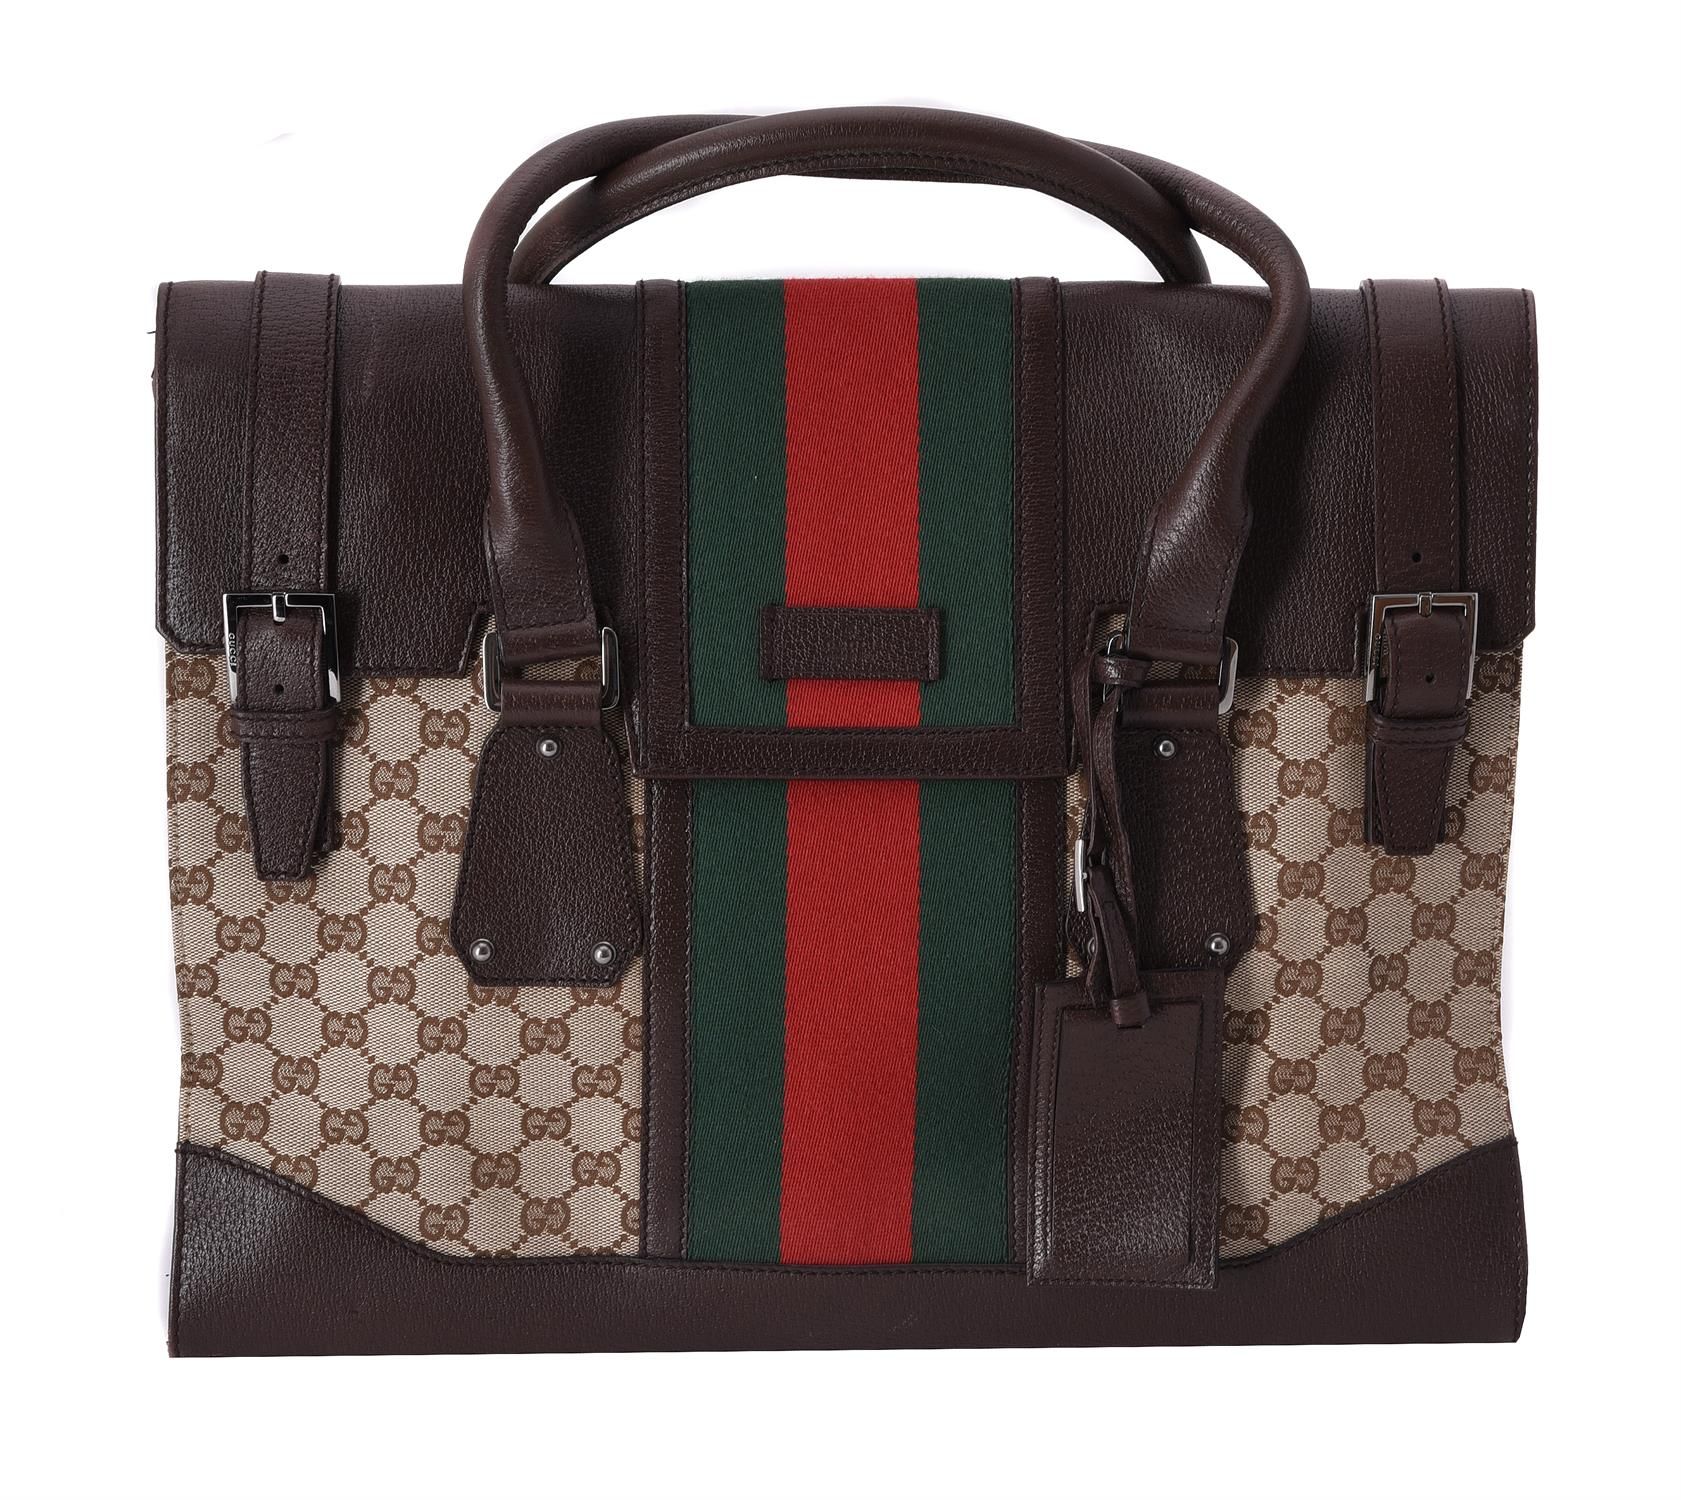 Gucci, a leather and canvas handbag Gucci, bolso de cuero y lona, con asas gemel&hellip;